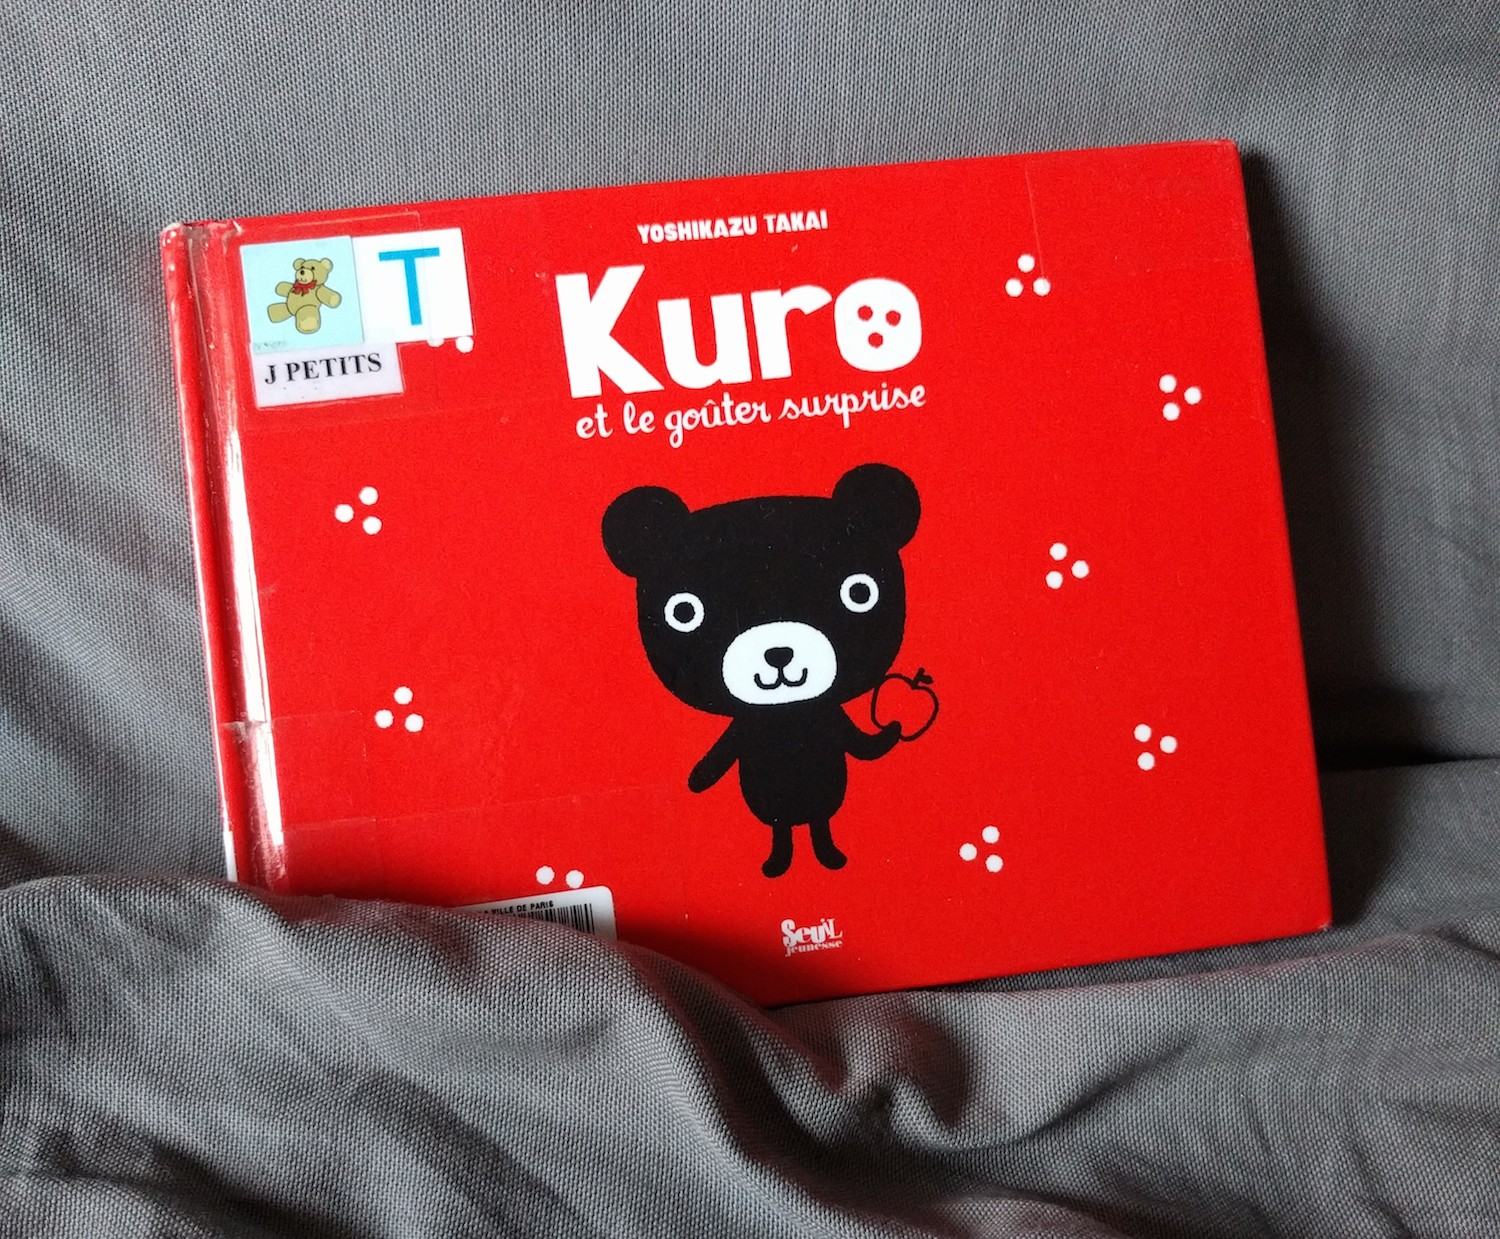 kuro et le gouter surprise couverture